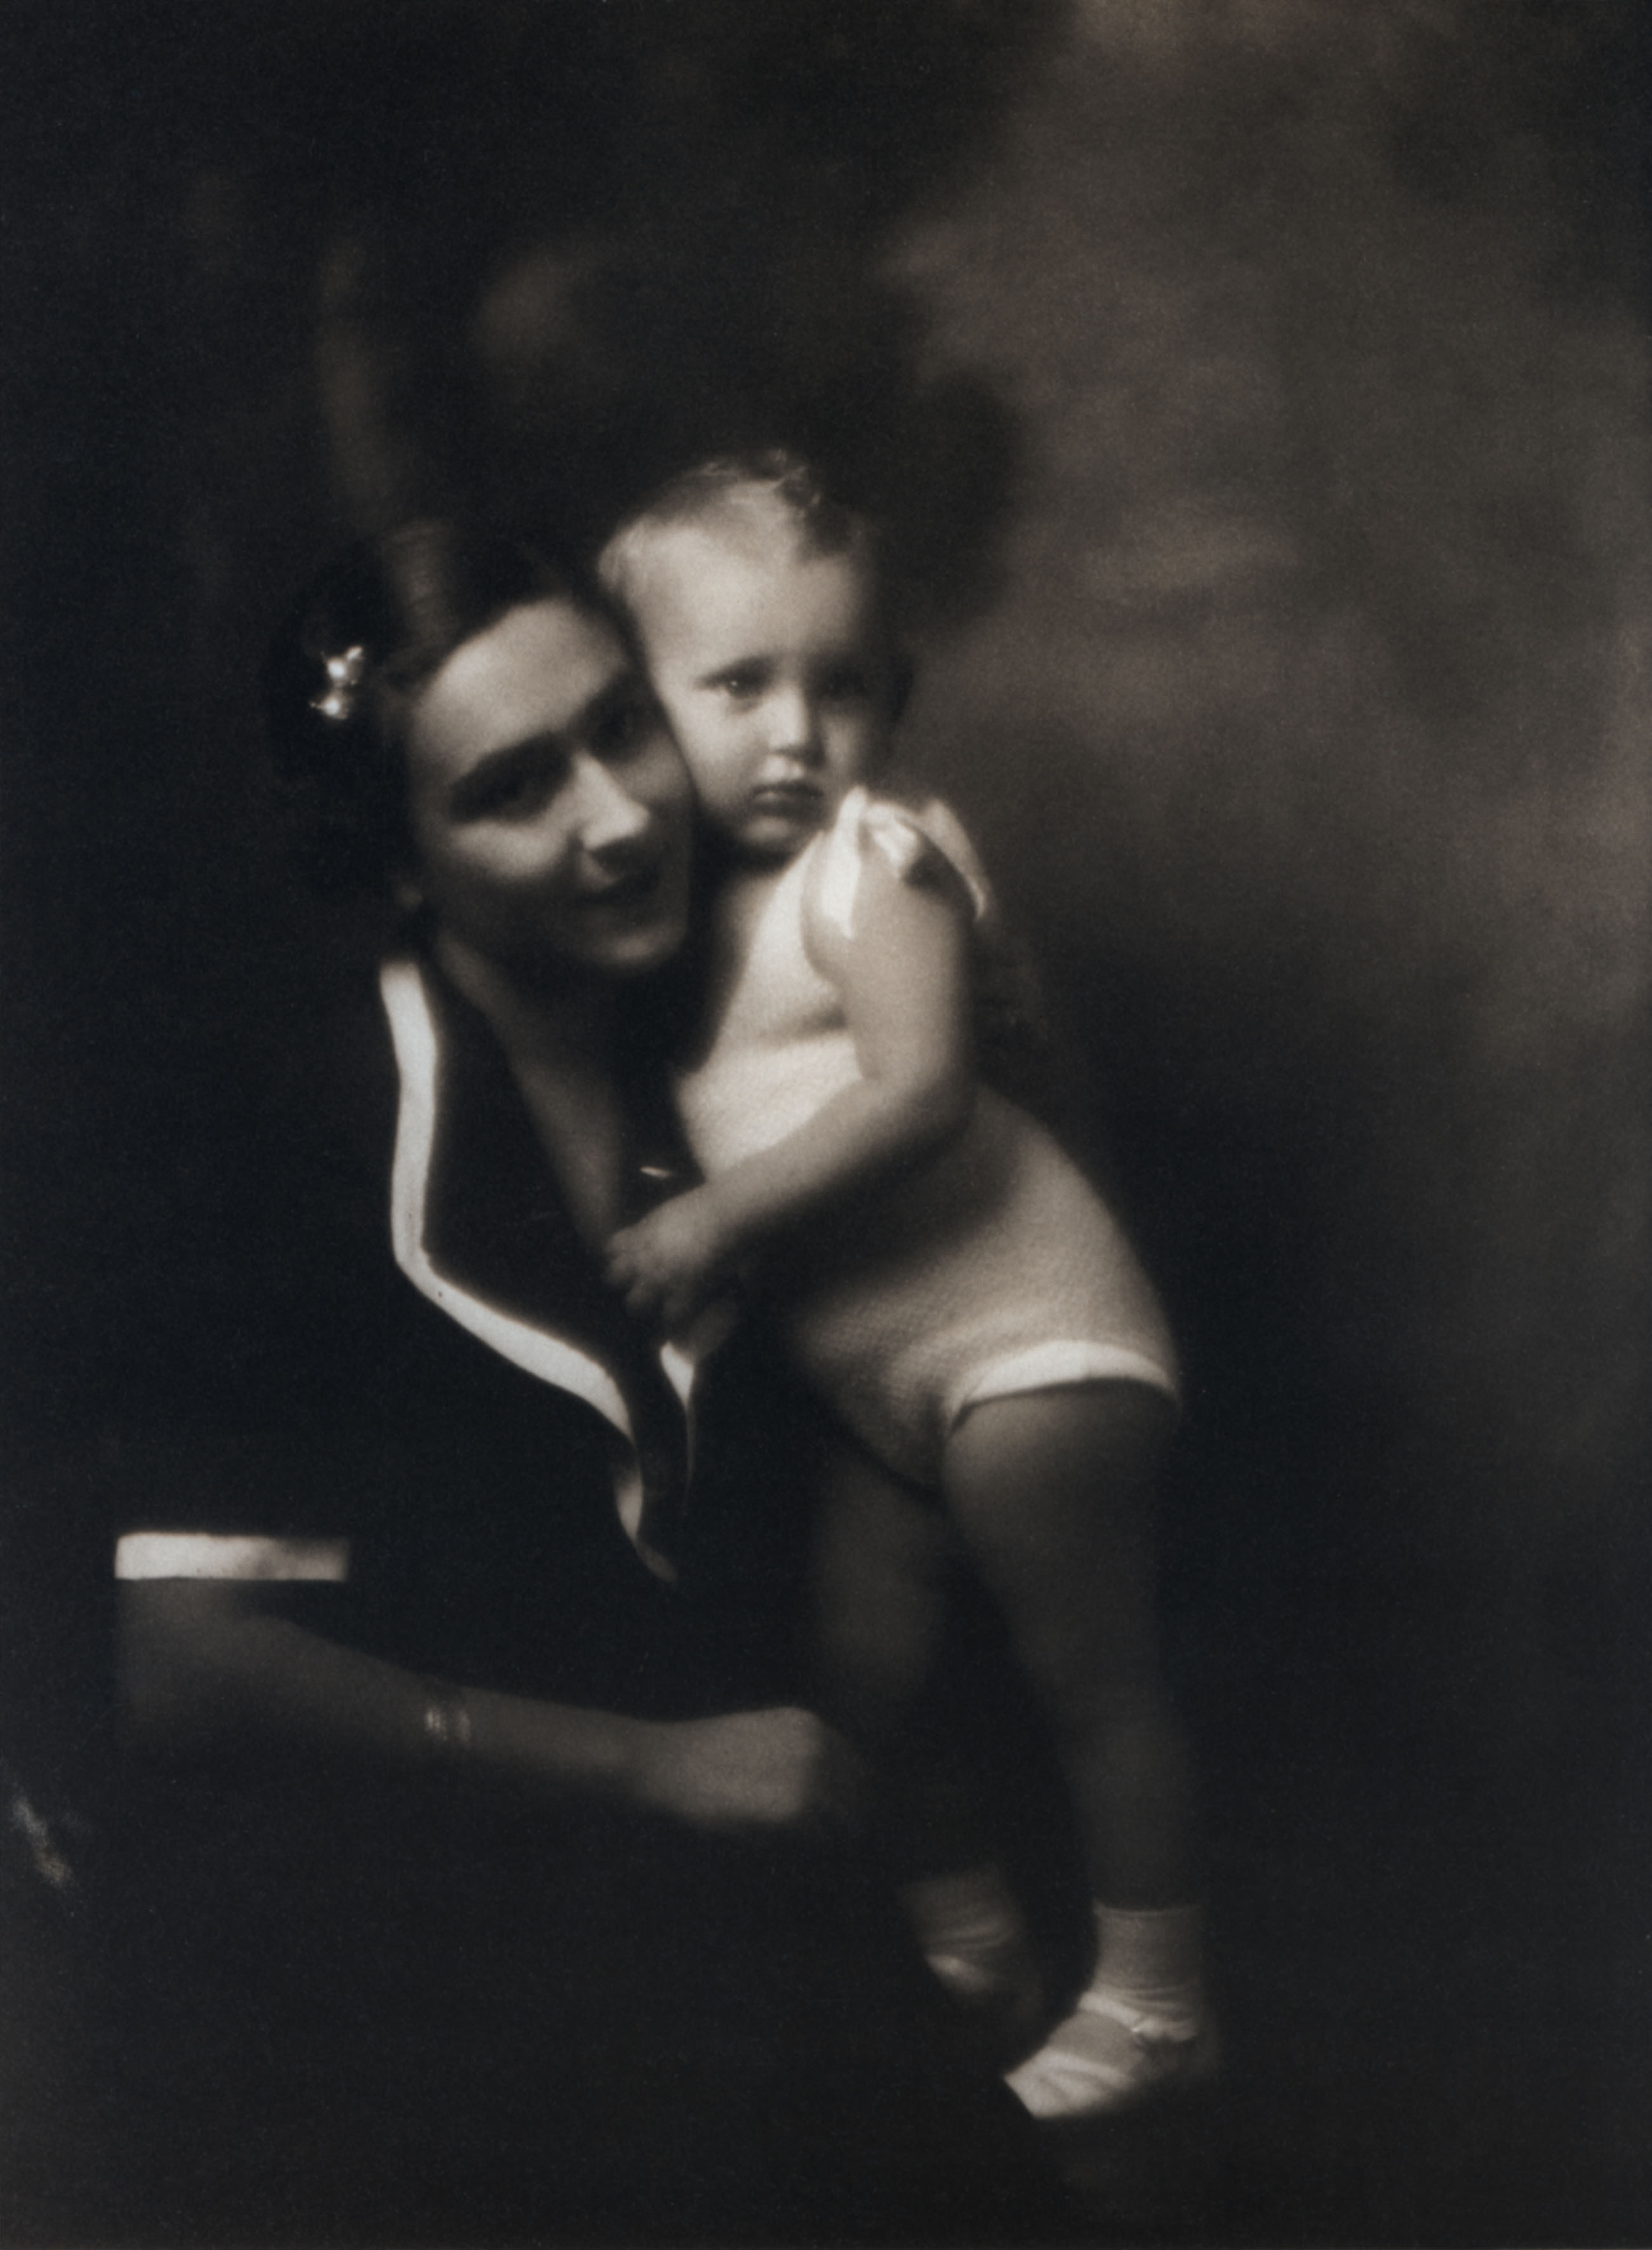 1935 circa. Wally Toscanini e la piccola Emanuela di Castelbarco, rispettivamente figlia e nipote del grande direttore d’orchestra.